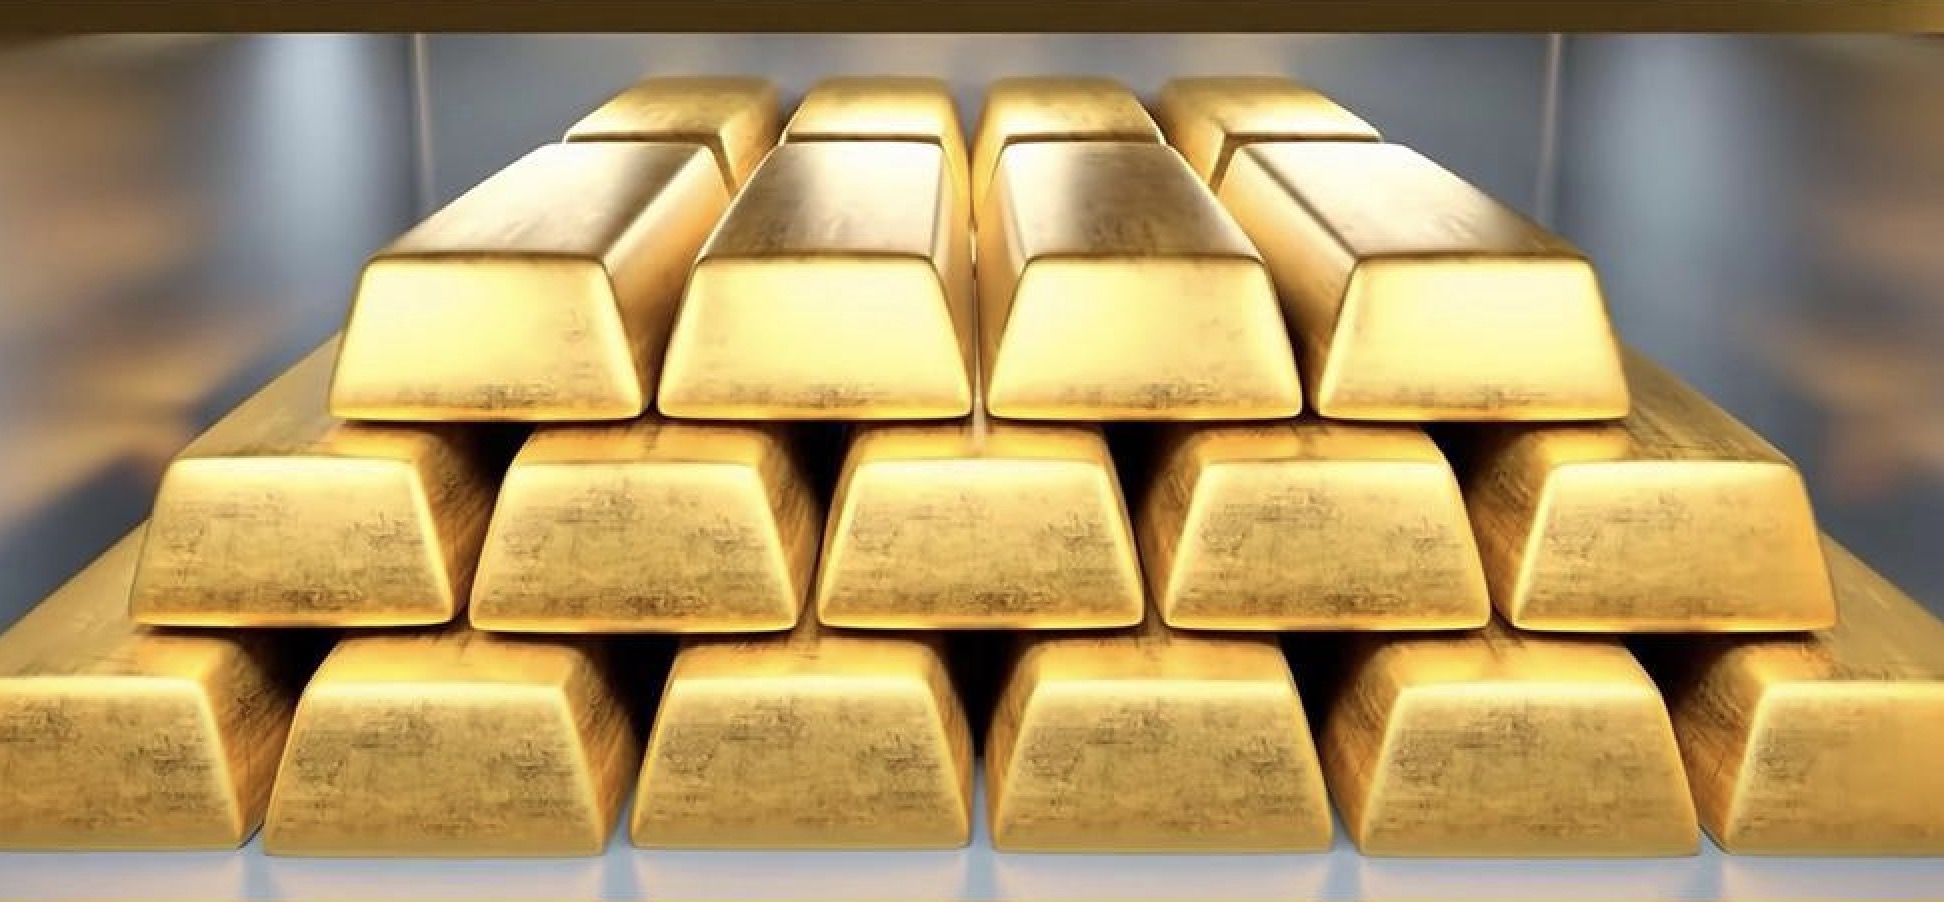 Pengingat perdagangan emas: Aksi ambil untung telah memicu koreksi tajam pada harga emas.